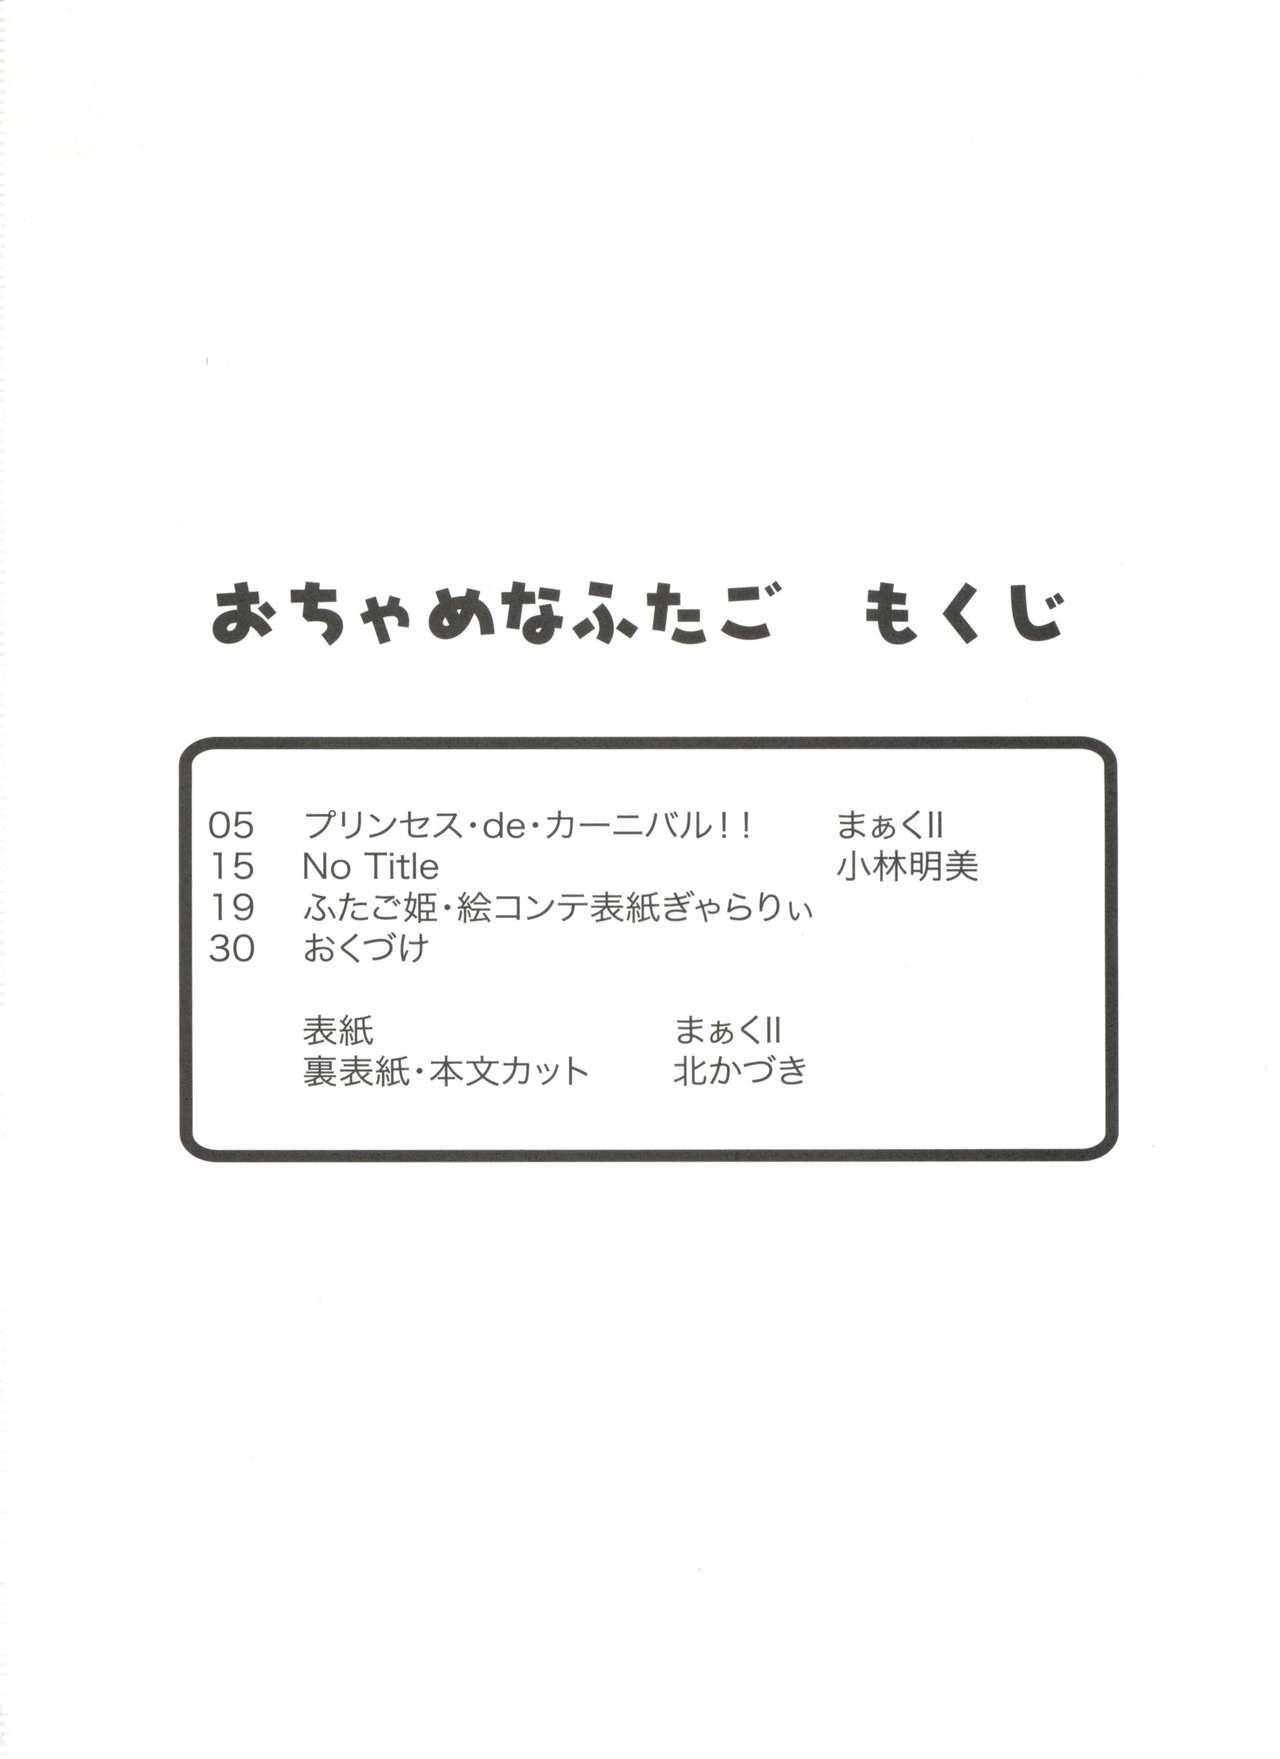 X Ochame na Futago - Fushigiboshi no futagohime Nuru Massage - Page 3